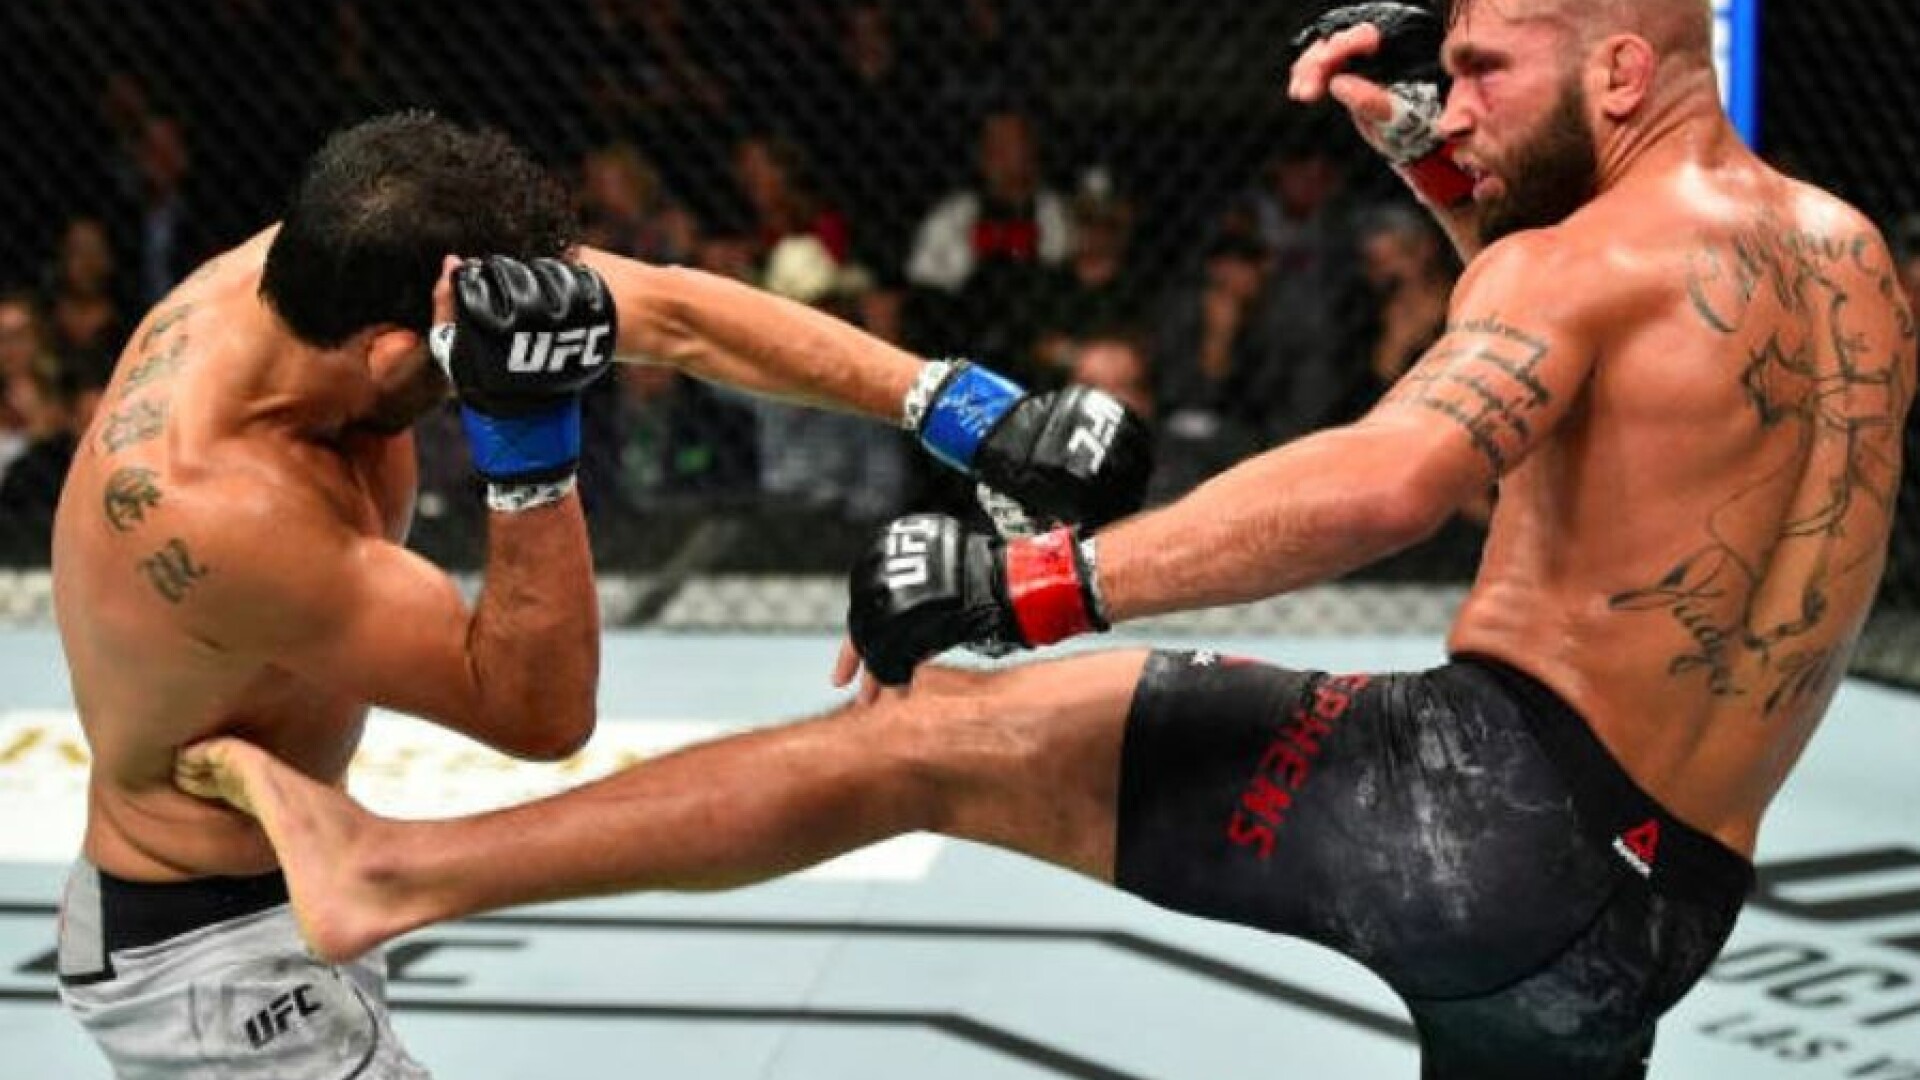 Oamenii s-au speriat cand au vazut imaginea horror! Cum arata piciorul unui luptator din UFC dupa ce a fost distrus in ring